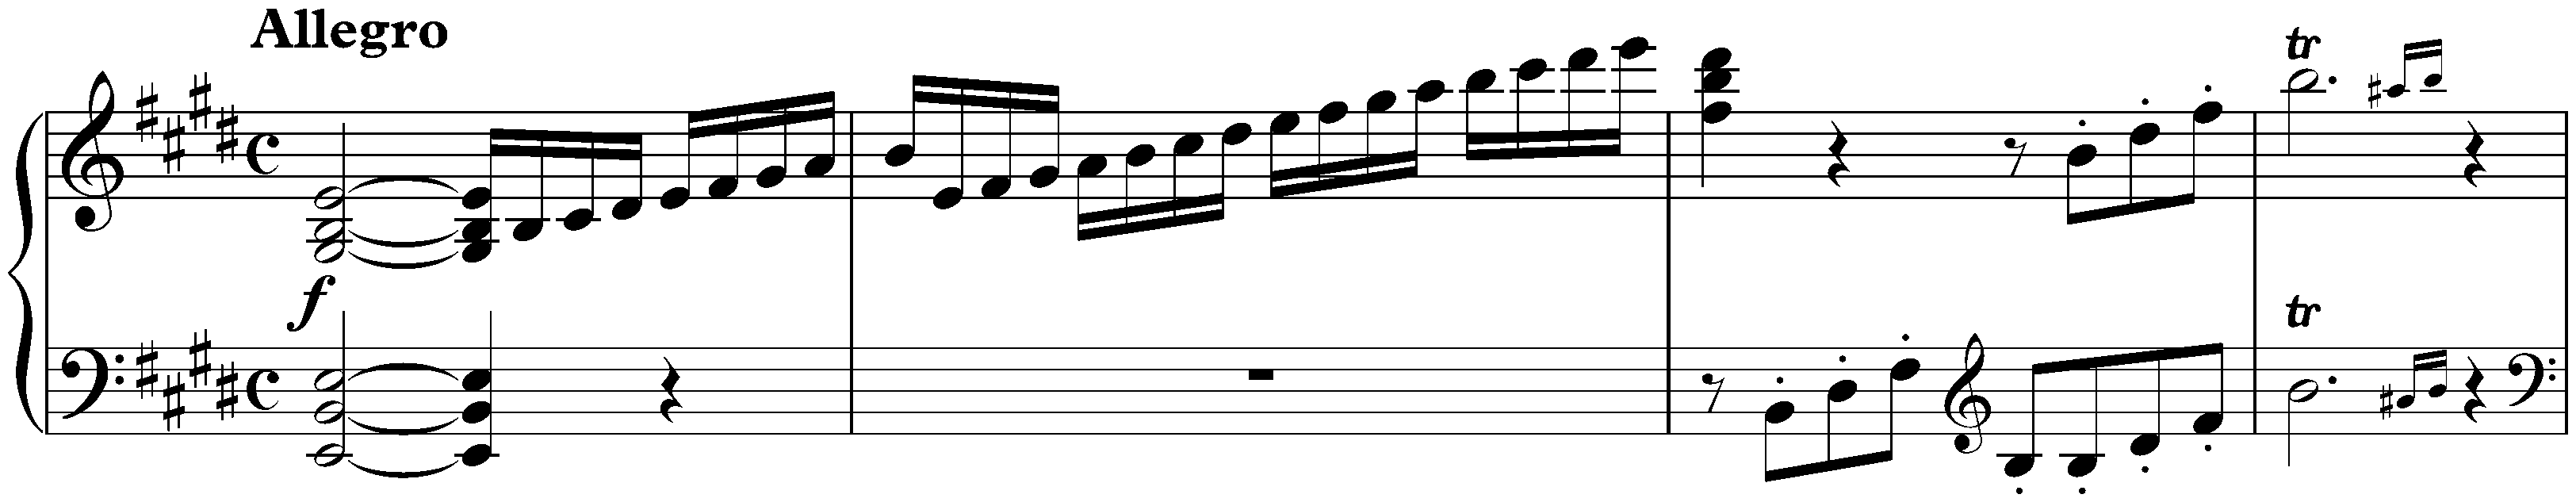 Allegro in E major, D 154